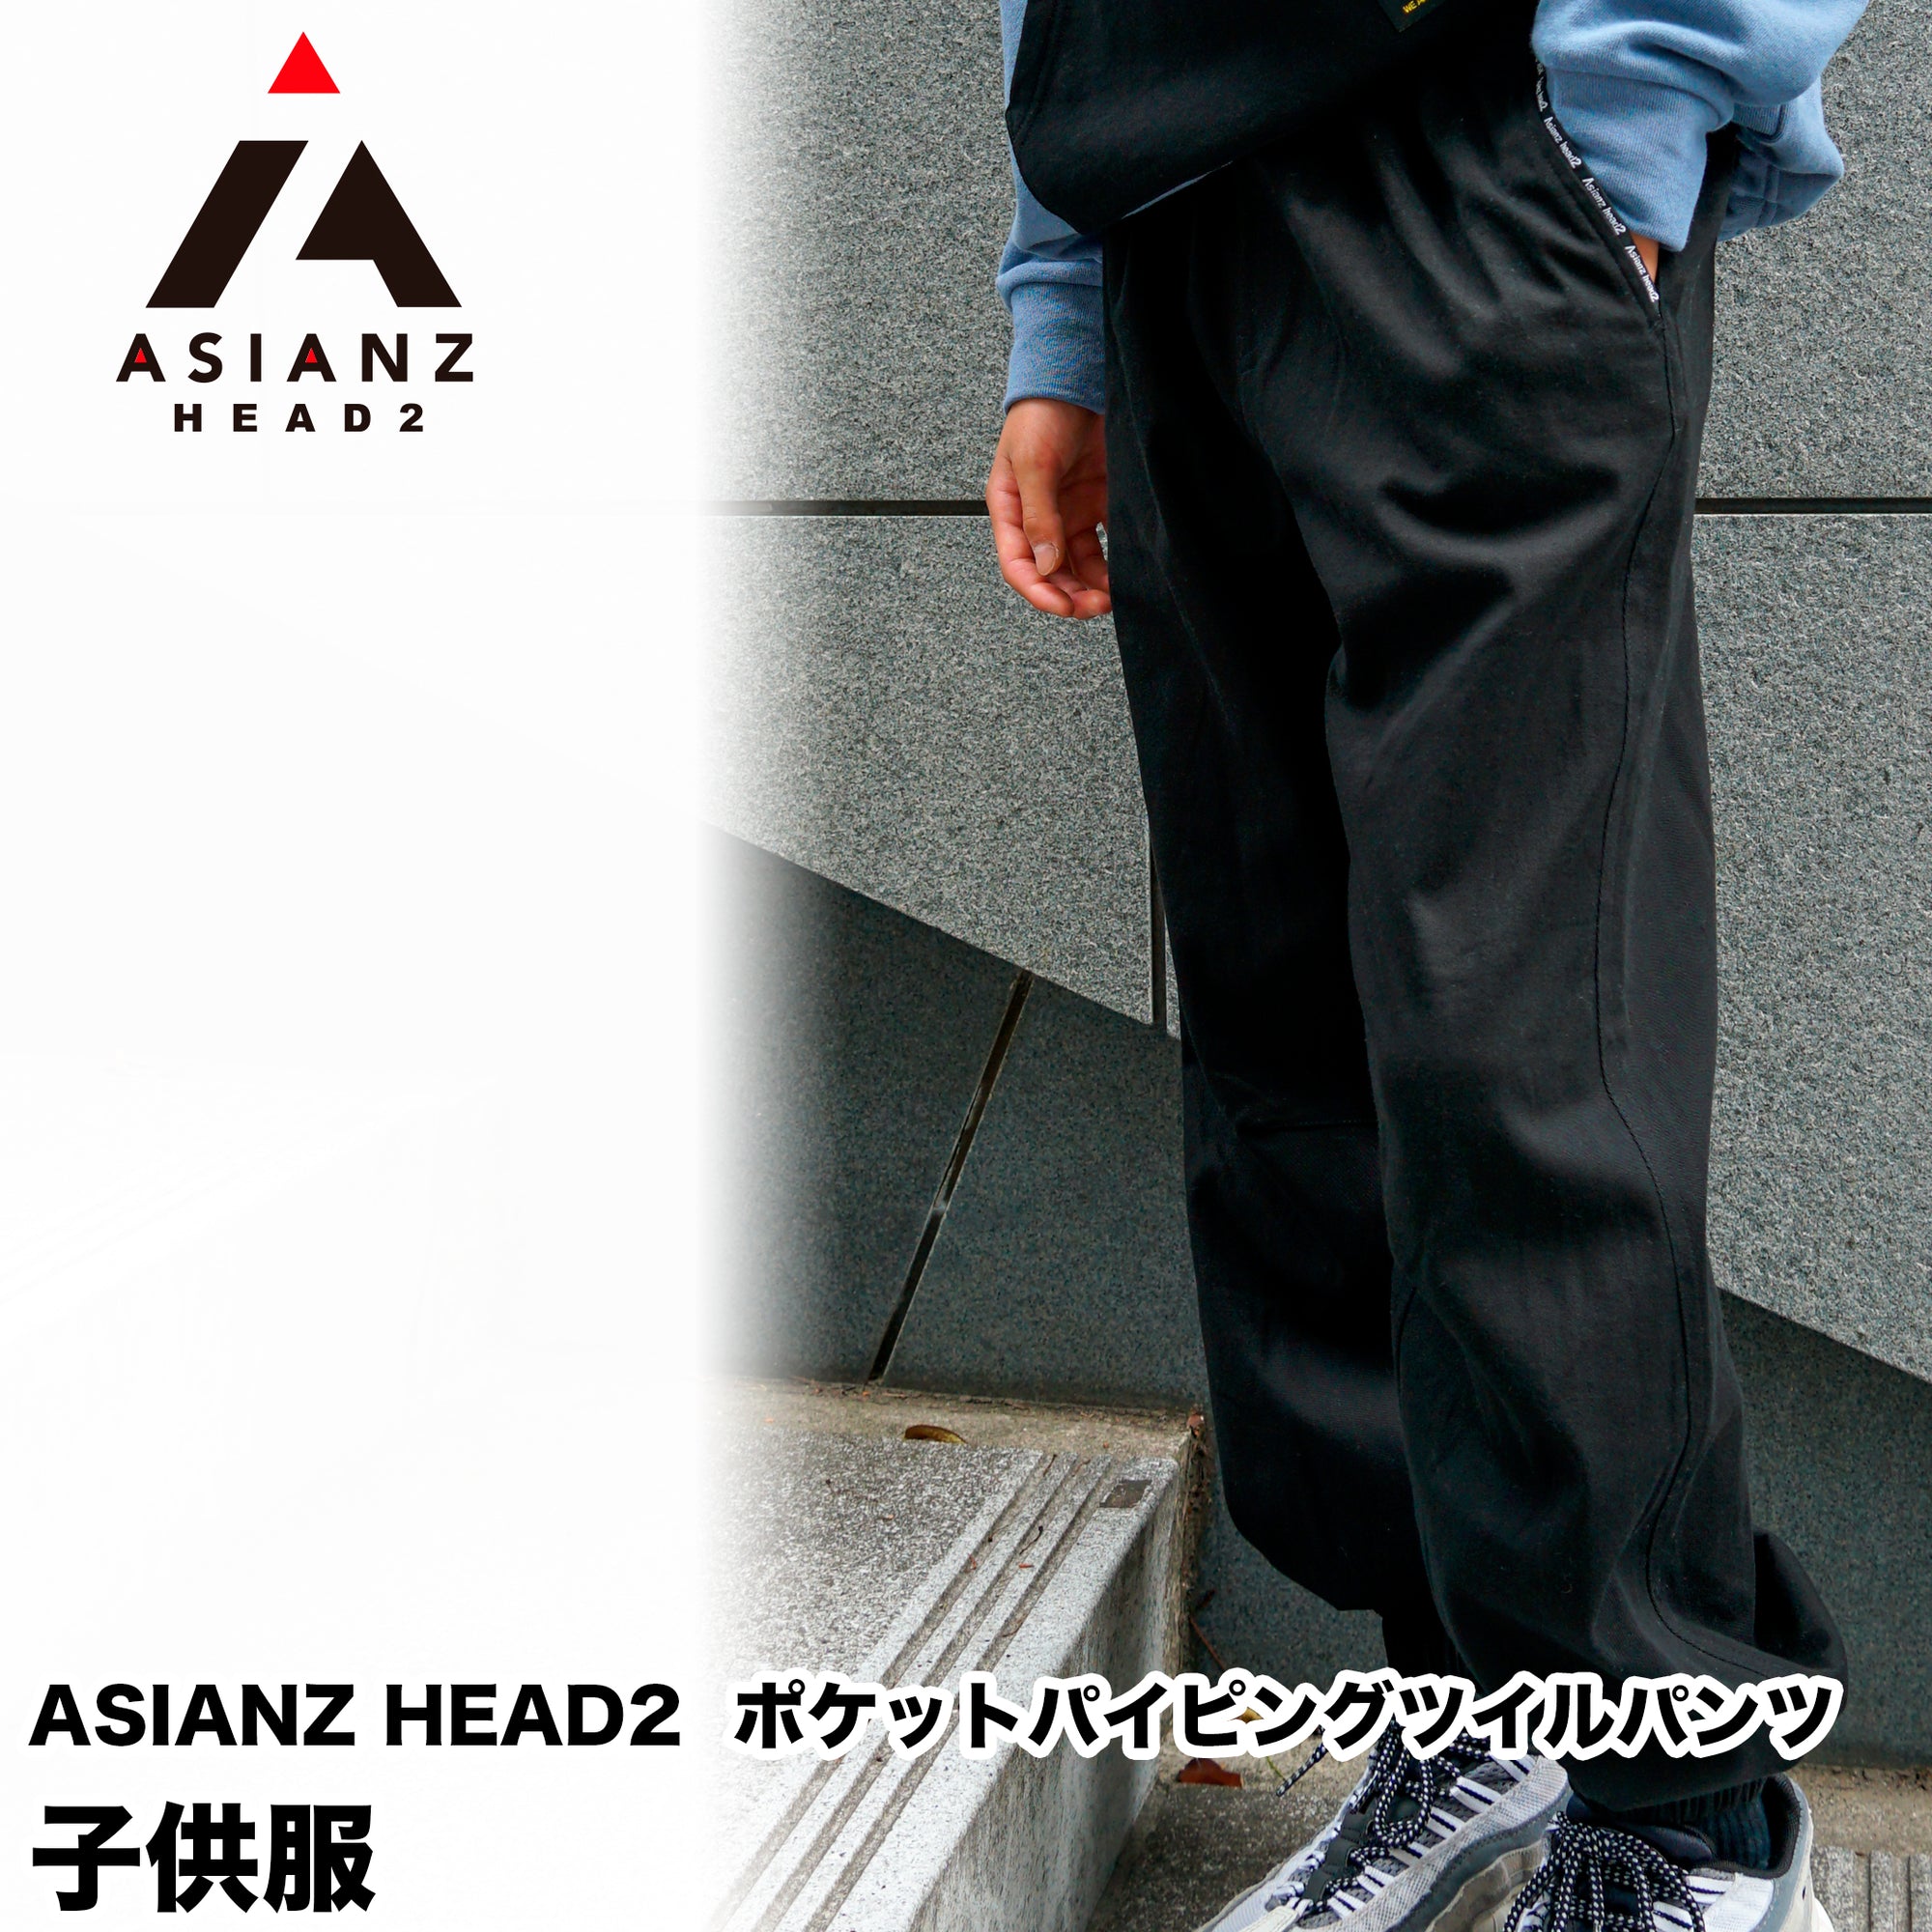 (40%オフ! セール商品)ASIANZ HEAD2 ポケットパイピングツイルパンツ キッズウェアー